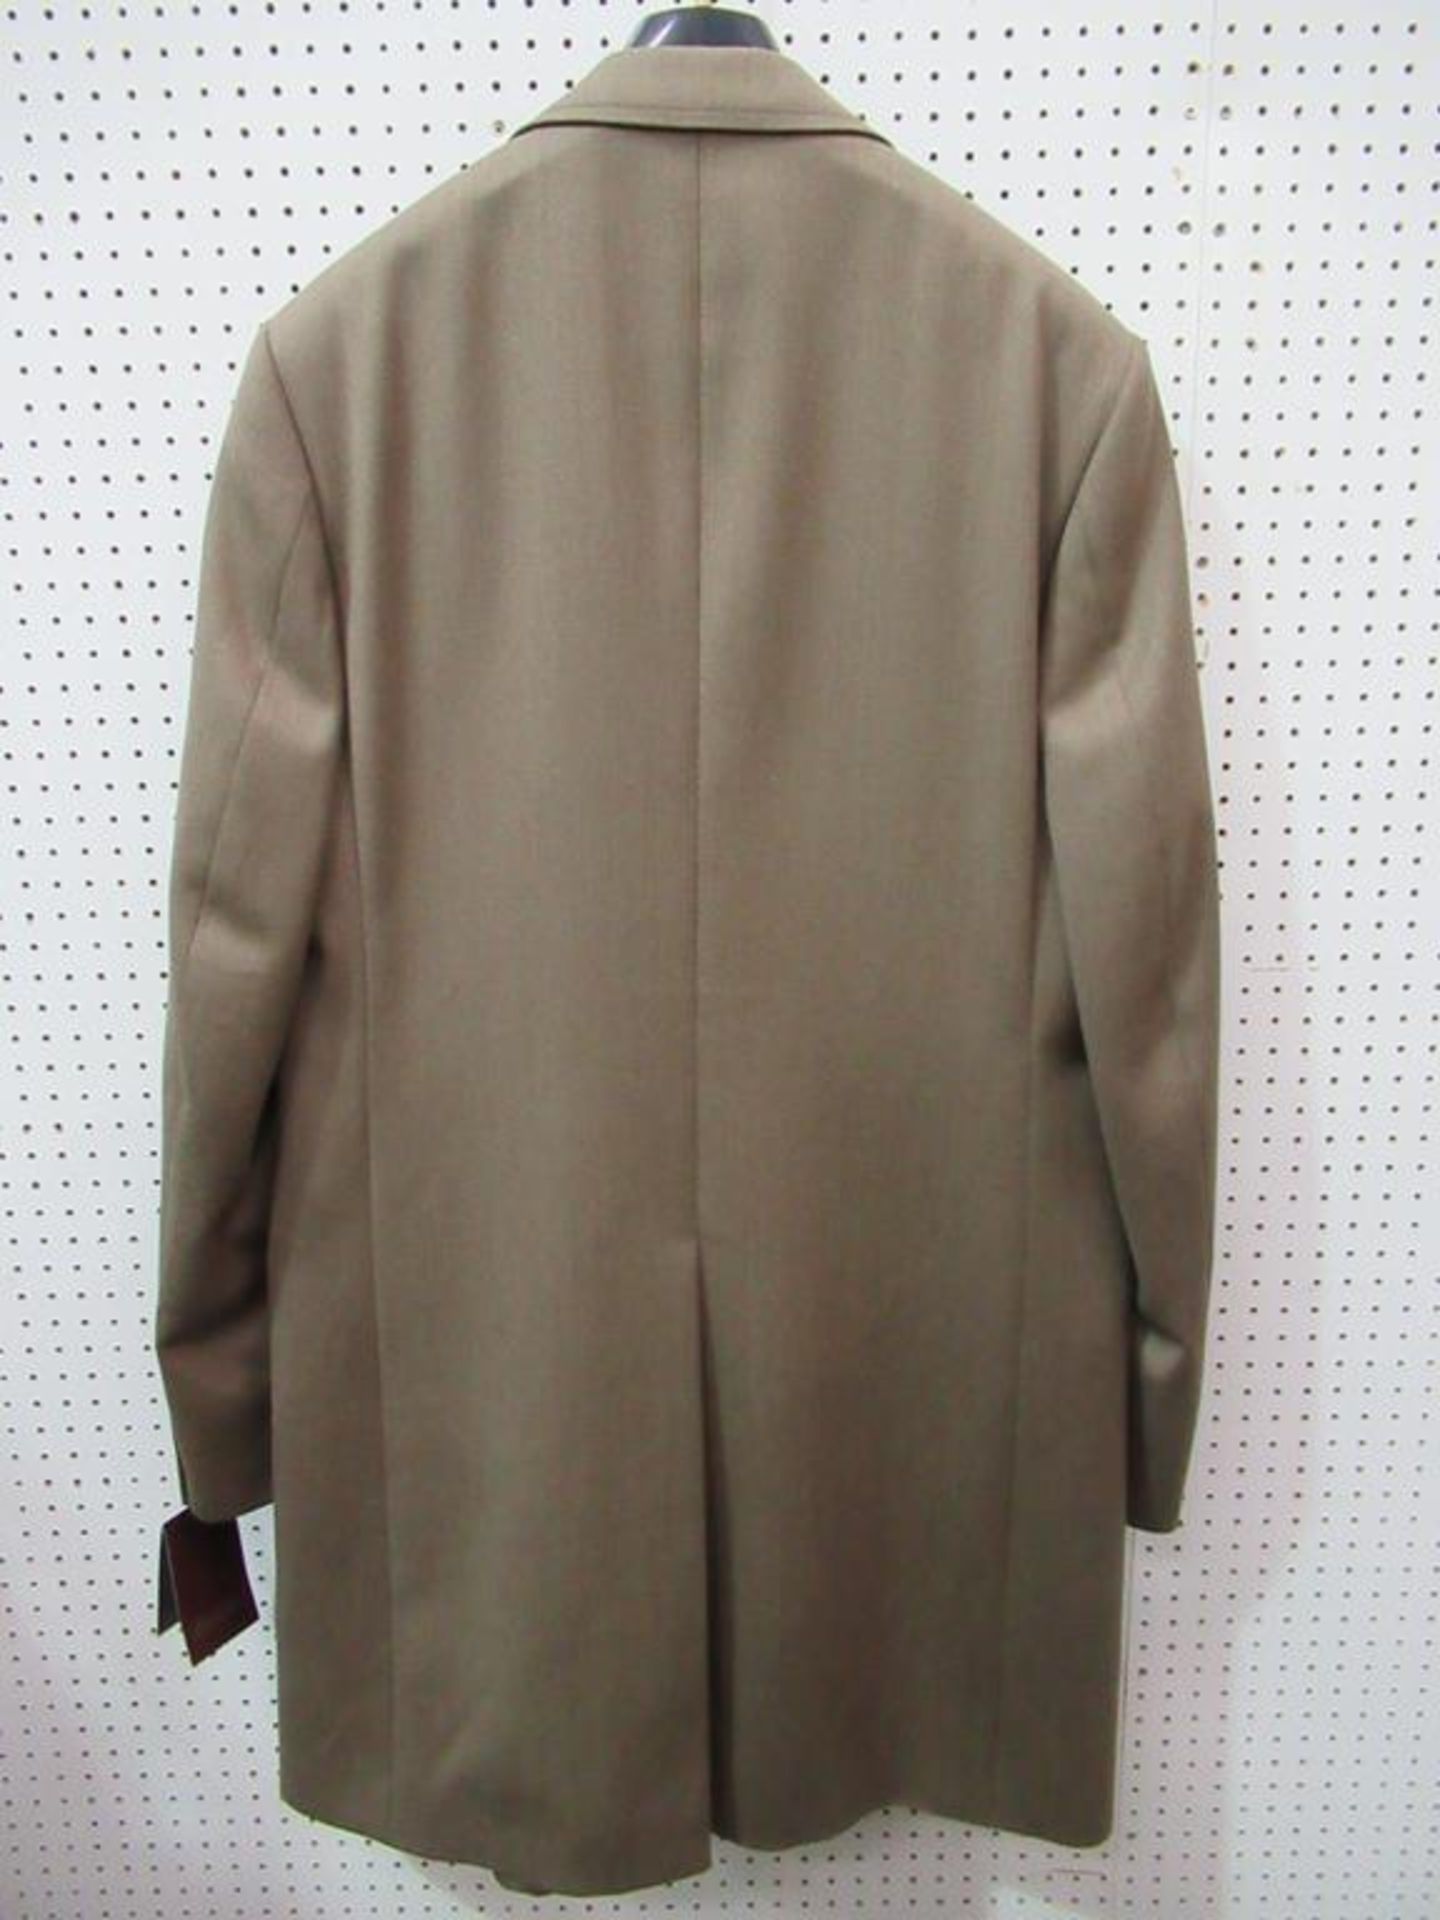 Bladen gents wool "Crombie Style" coat - Image 2 of 2